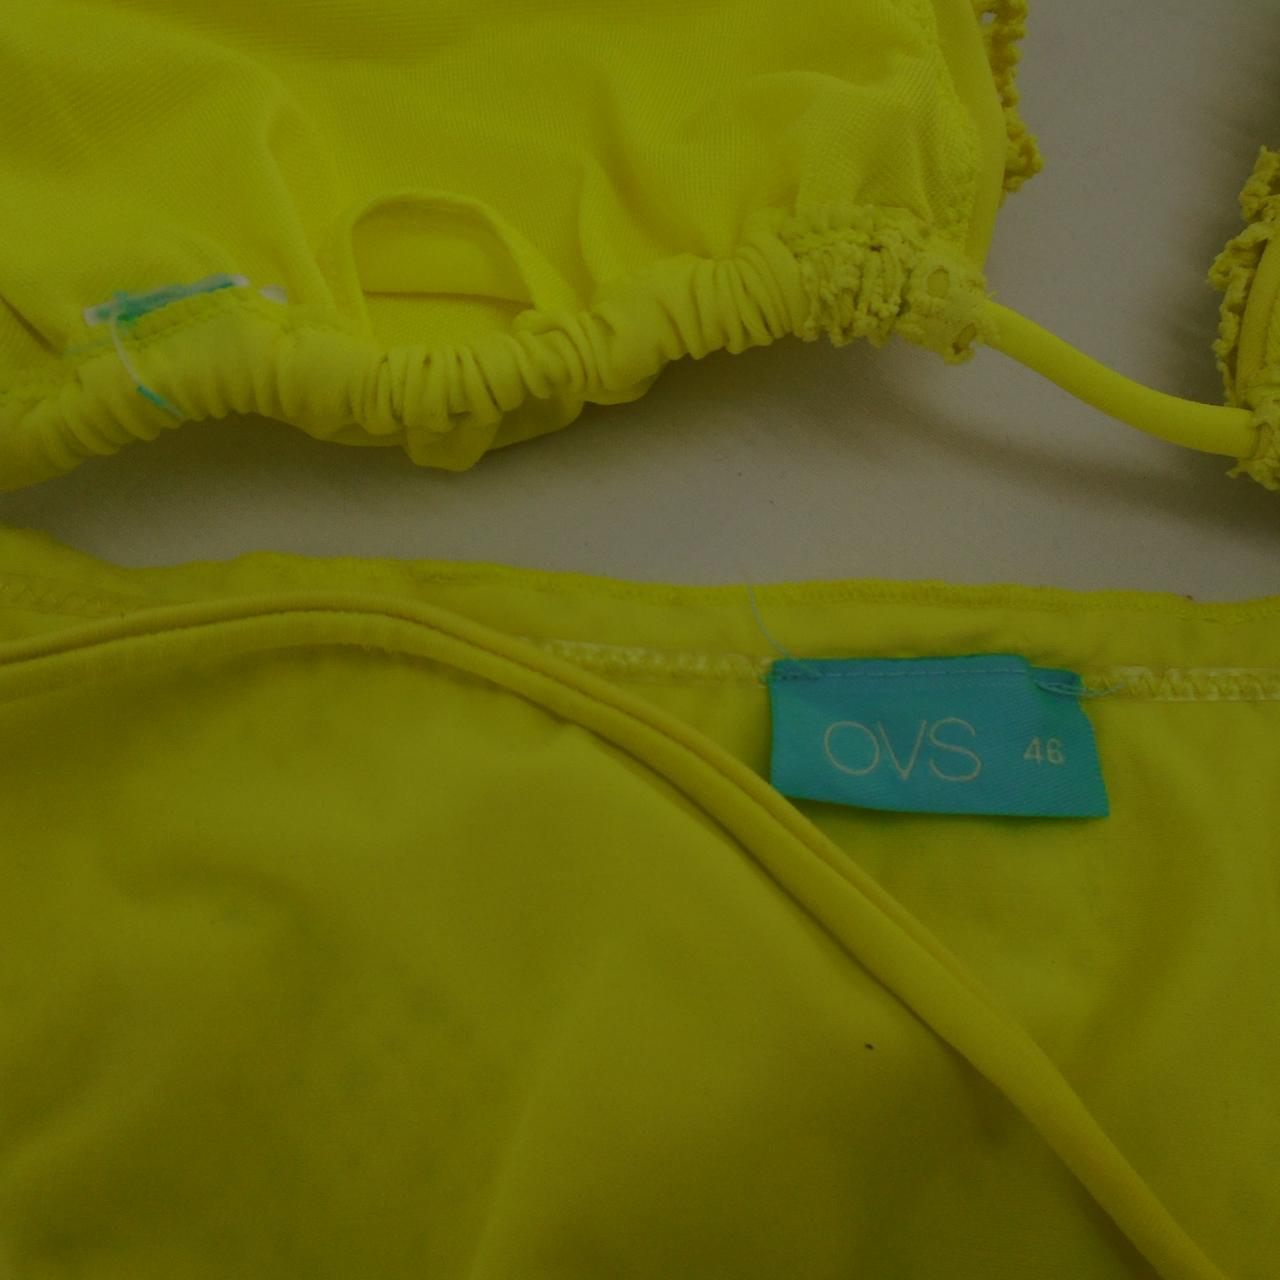 Damen-Badeanzug OVS. Gelb. M. Gebraucht. Gut